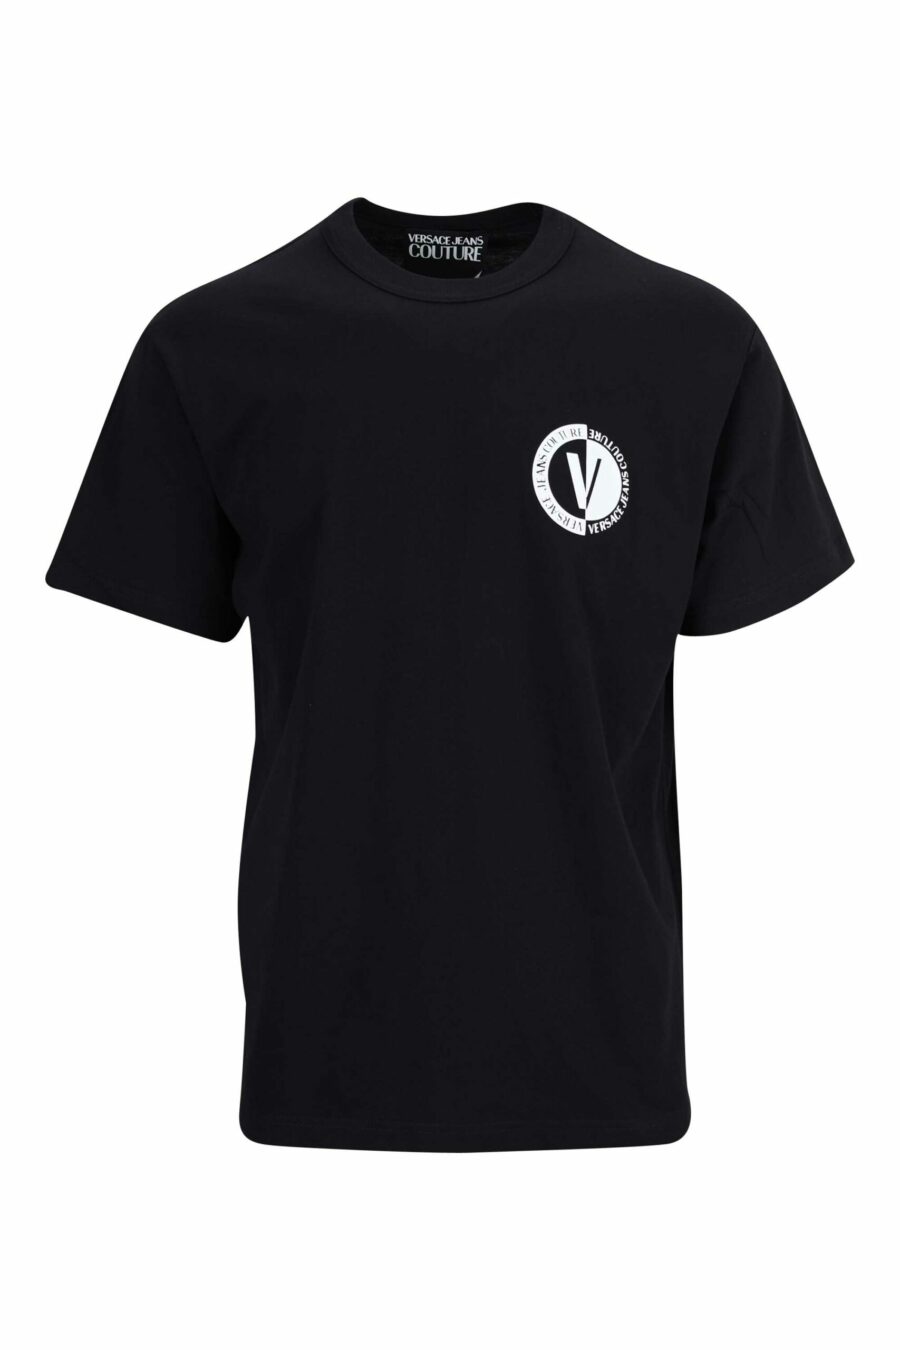 T-shirt preta com mini-logotipo circular em contraste - 8052019471700 scaled